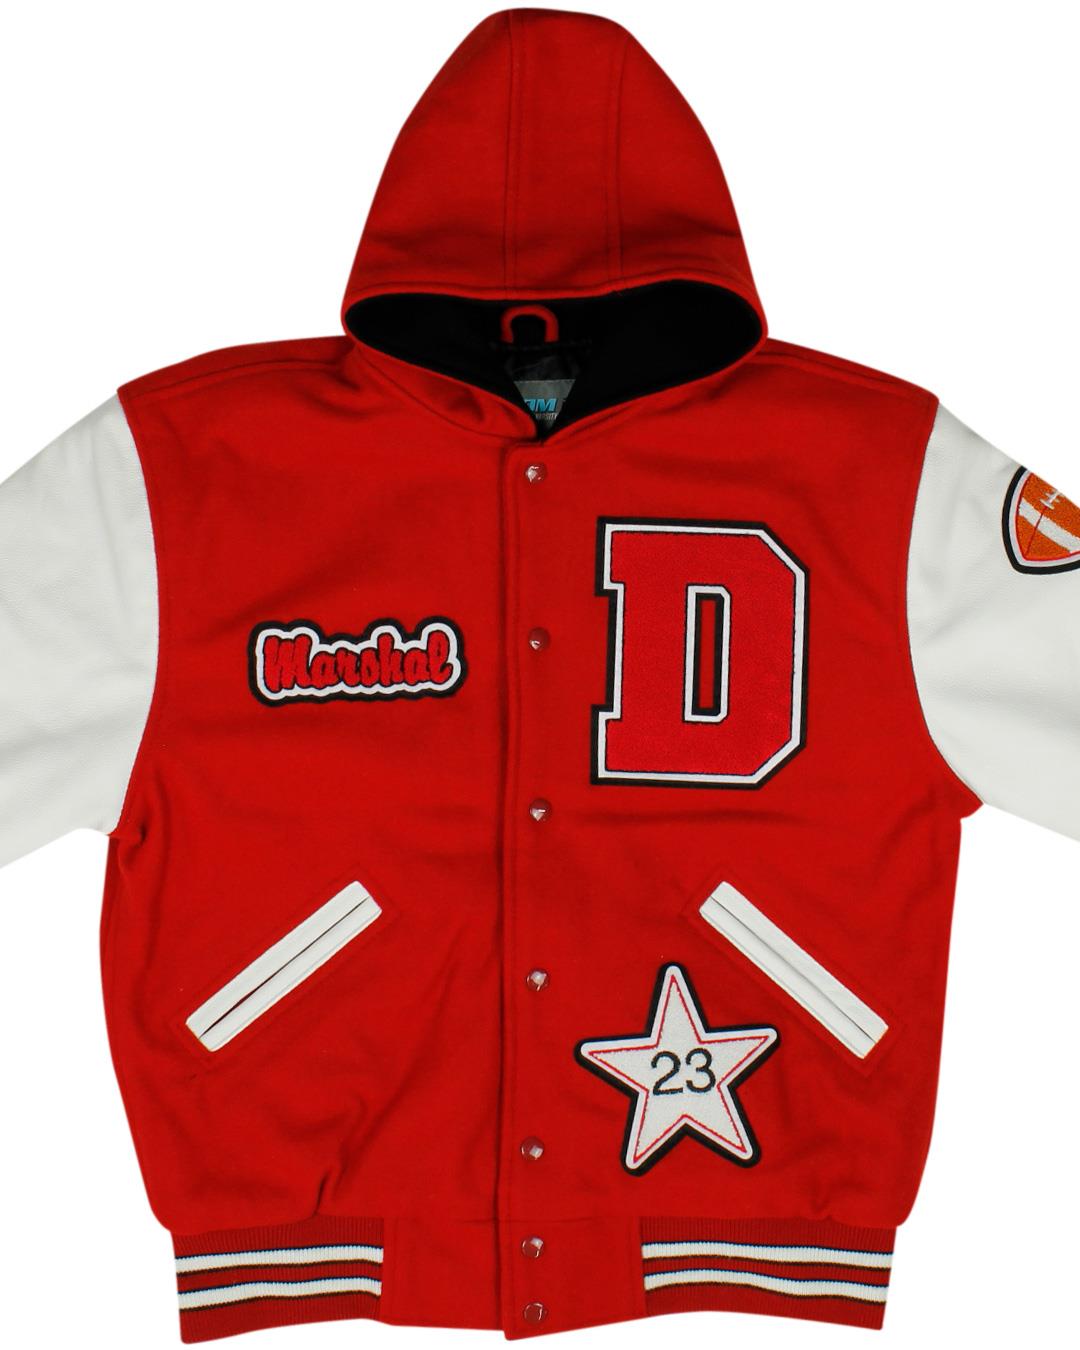 Dufur High School Rangers Varsity Jacket, Dufur OR - Front